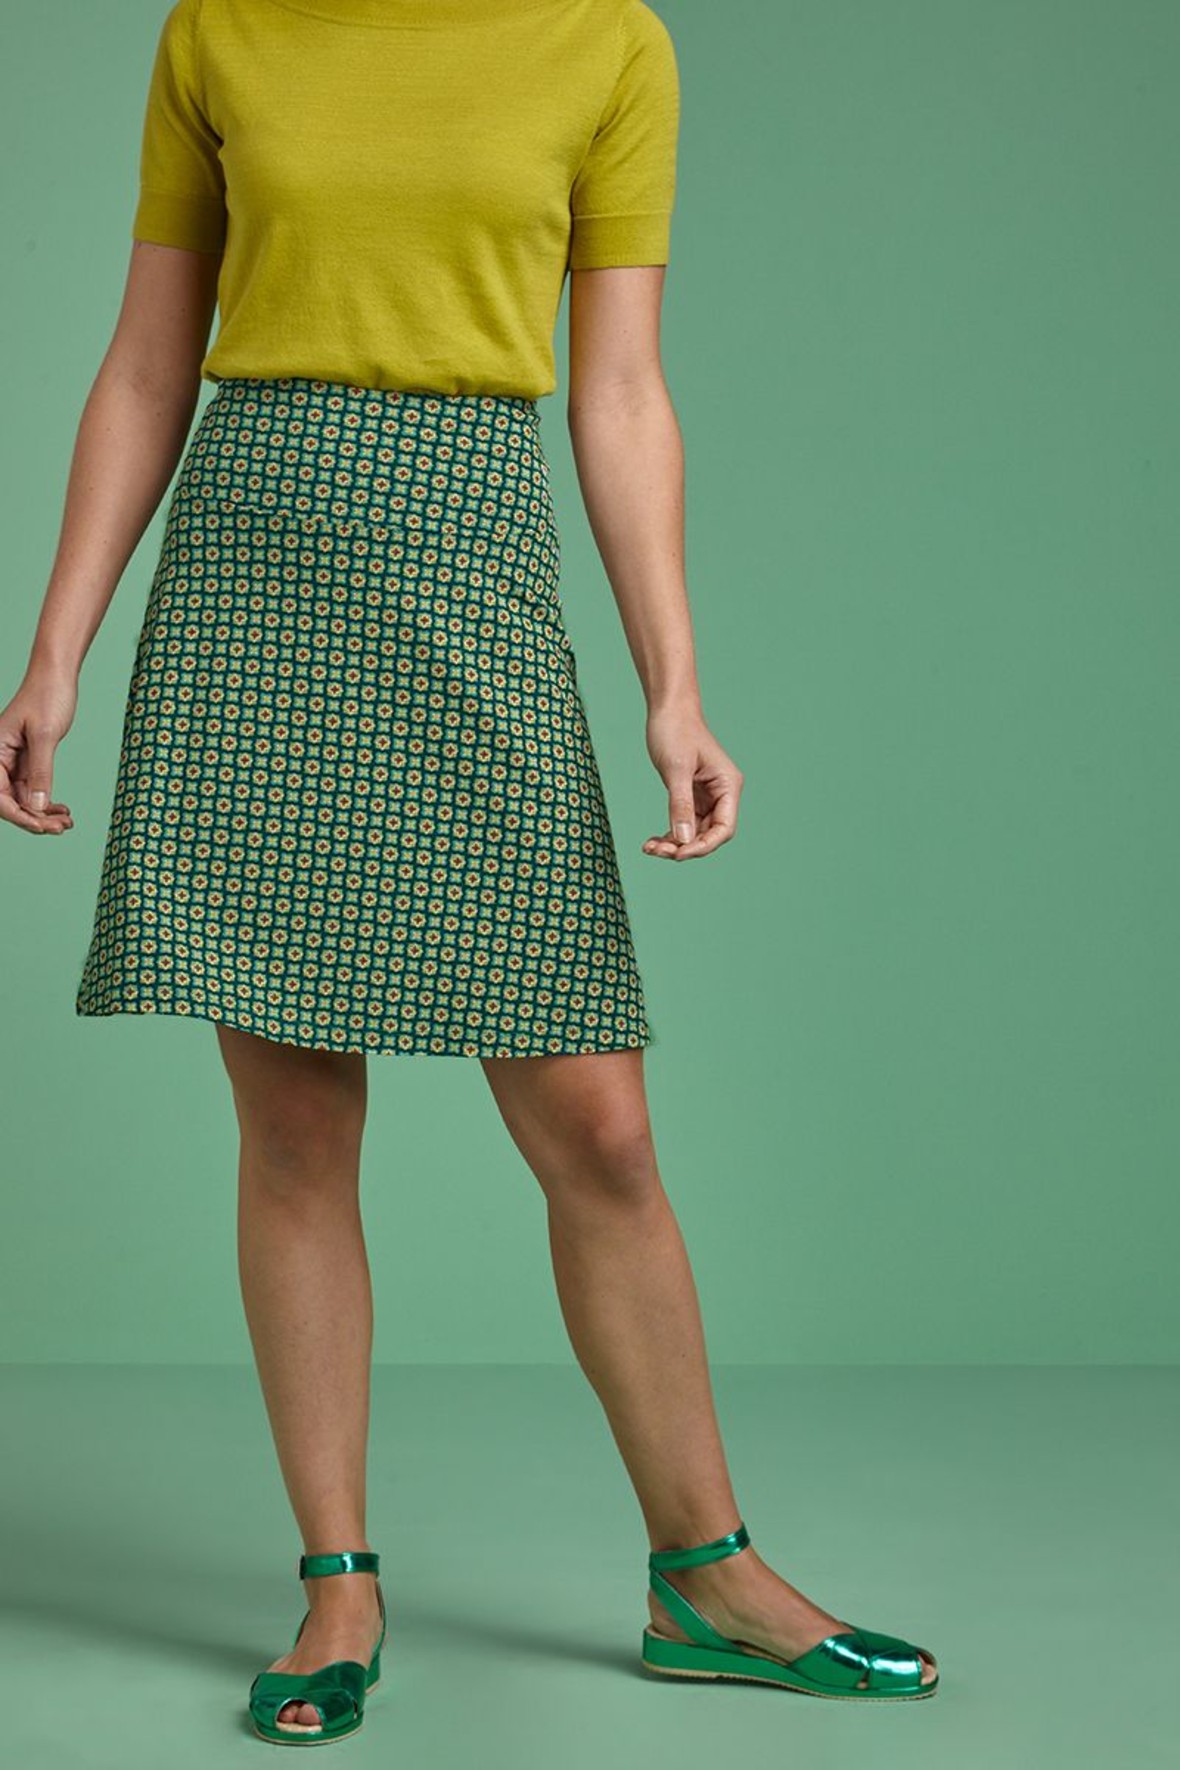 King Louie Border Skirt nederdel med print i grønne farver - Hos Lohse